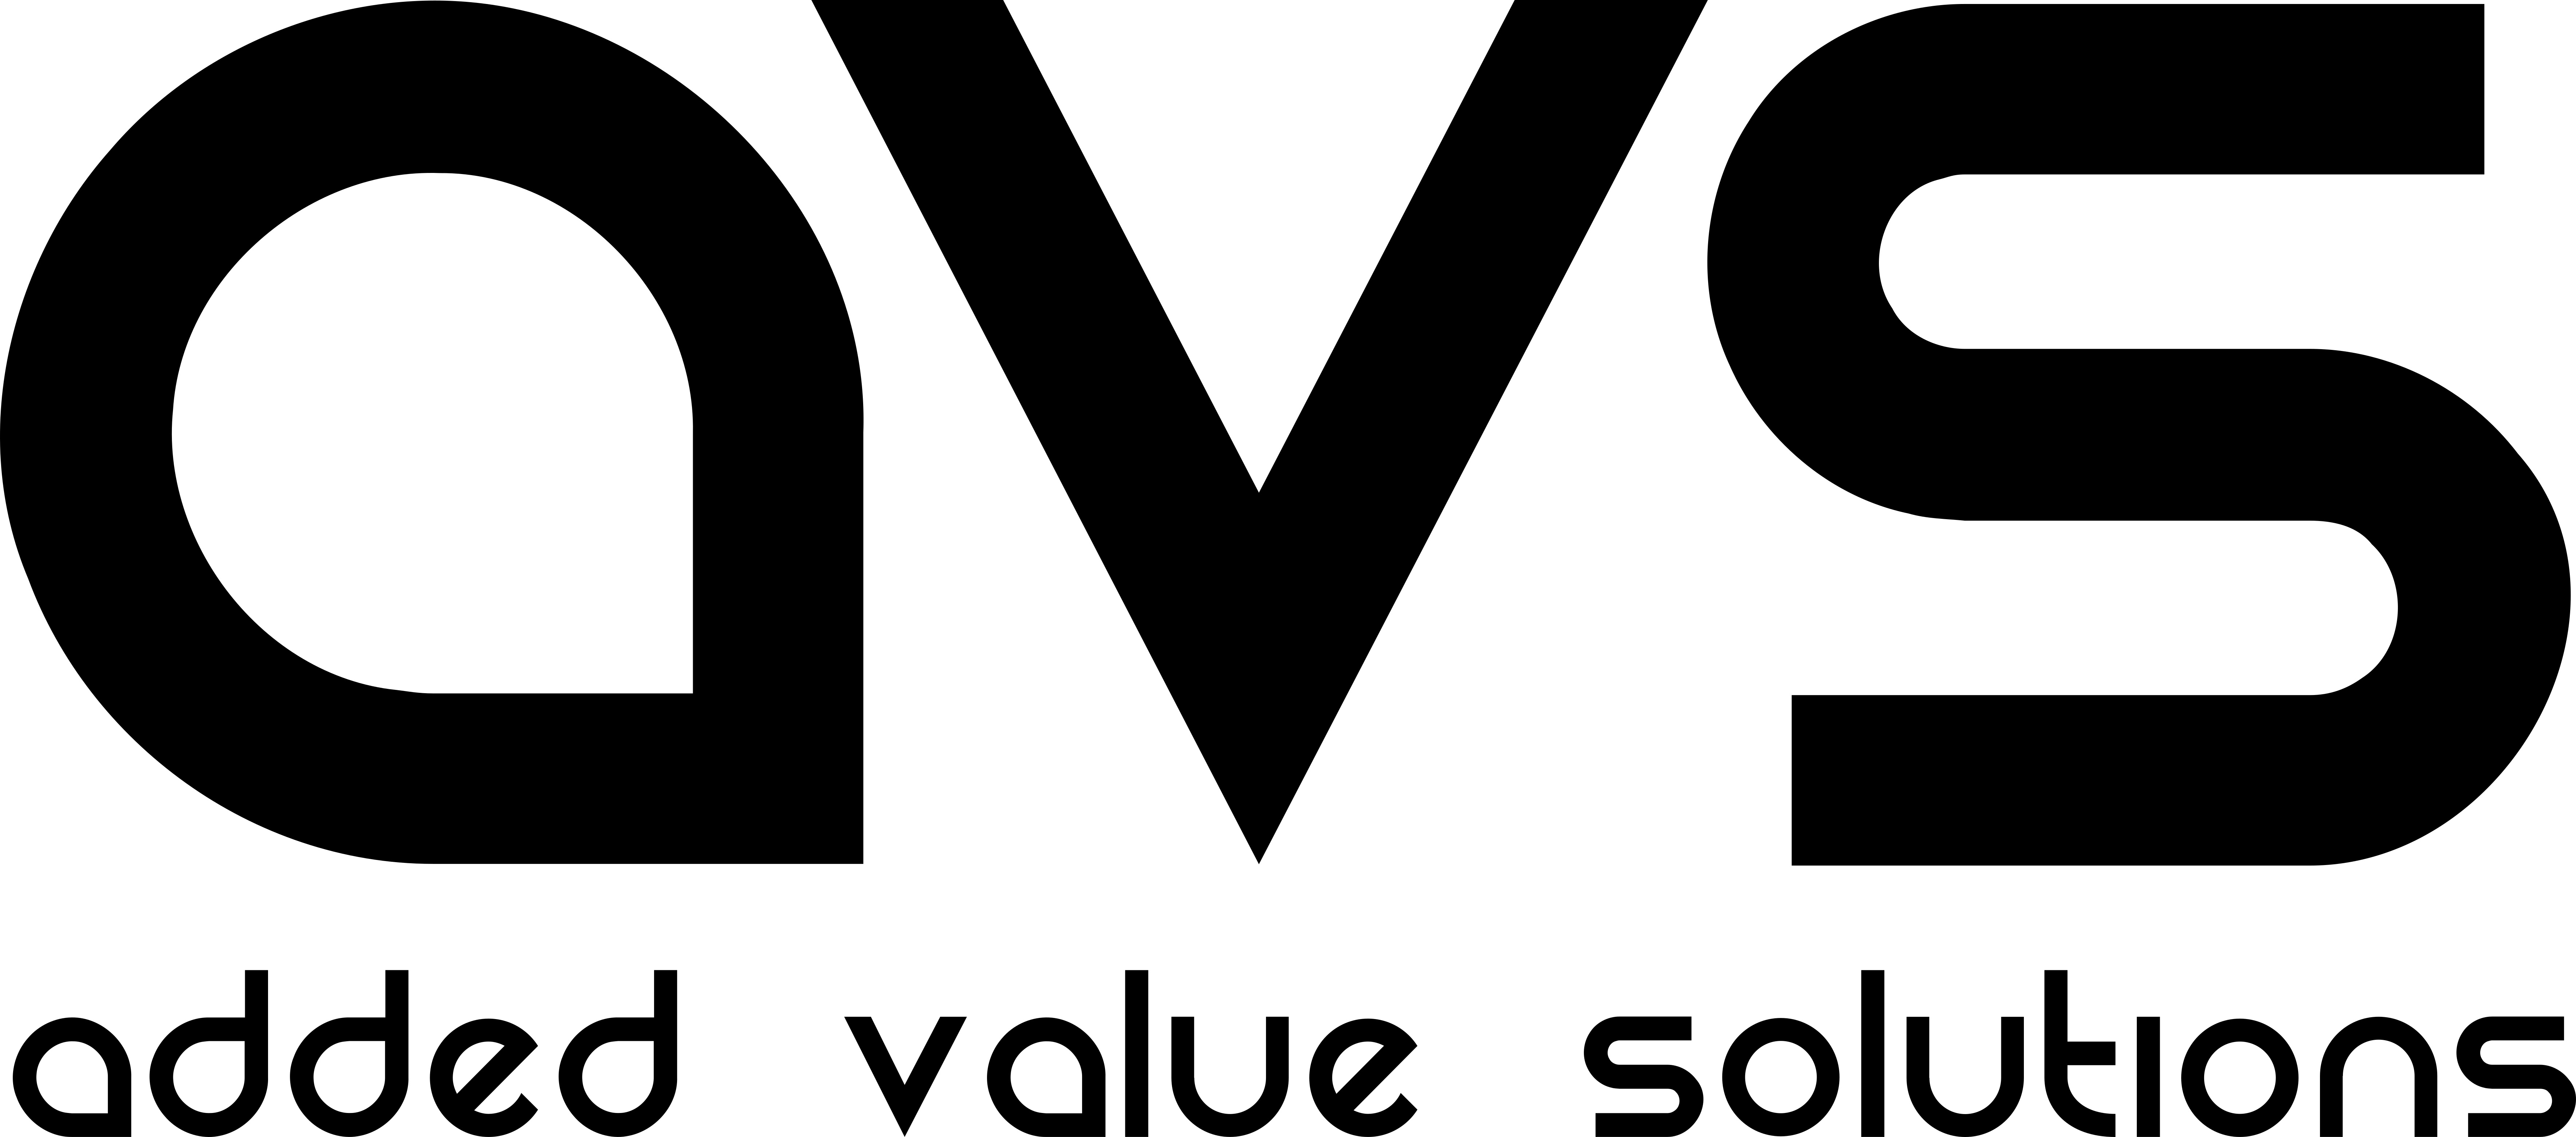 AVS_logo vectorial_negro.jpg